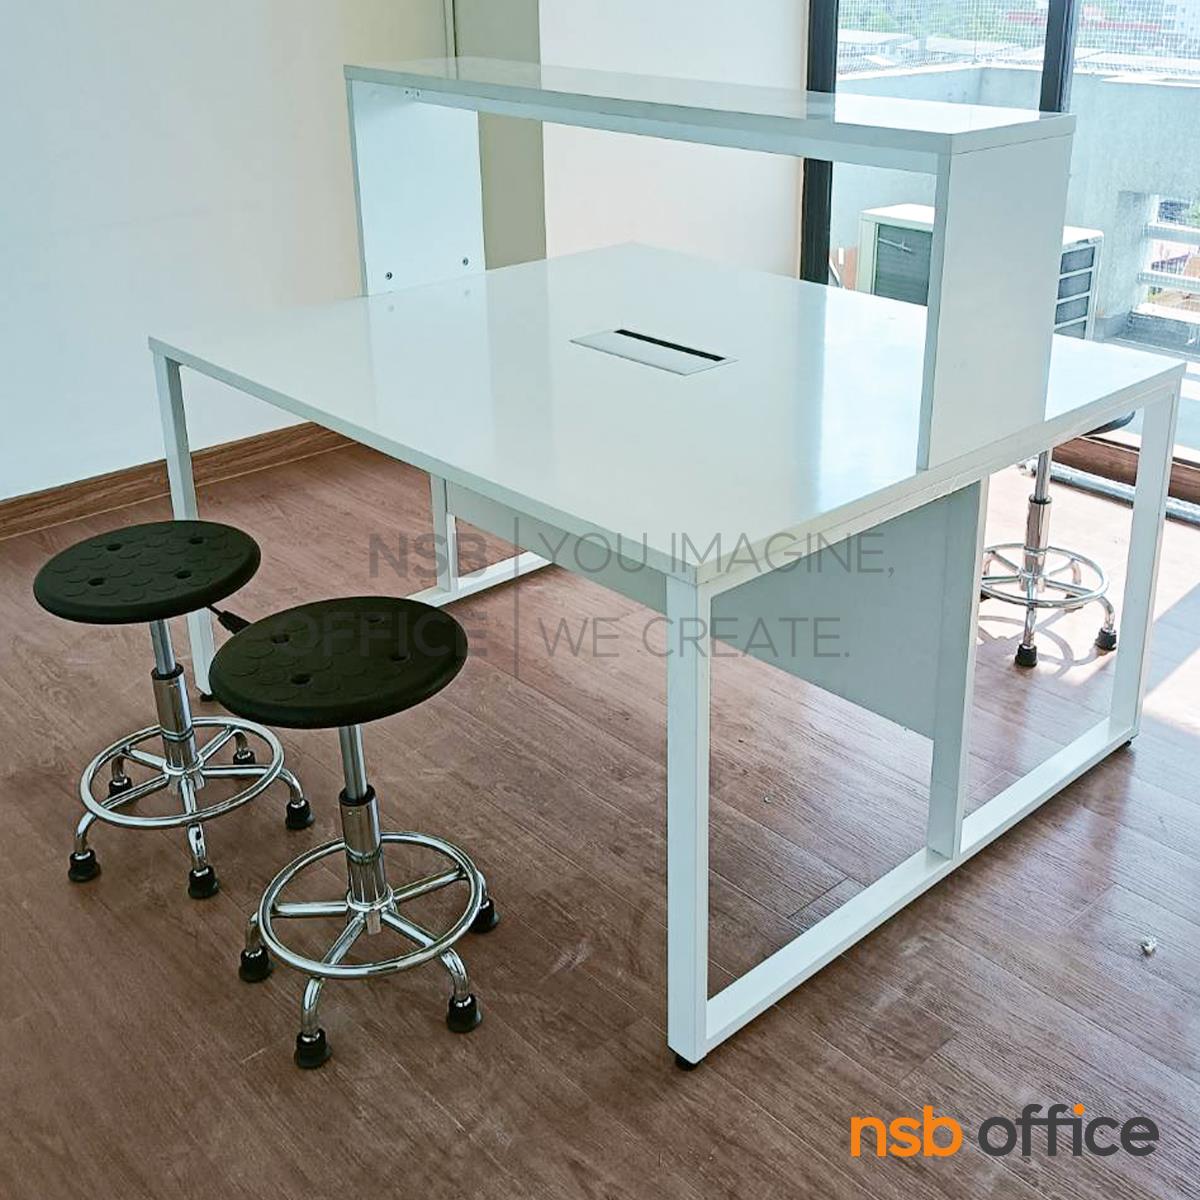 โต๊ะห้องแล็บ ท็อปลามิเนต HPL แบบมีชั้นต่อบน  พร้อมป๊อปอัพ กึ่งกลางโต๊ะ รุ่น A24A047-1 